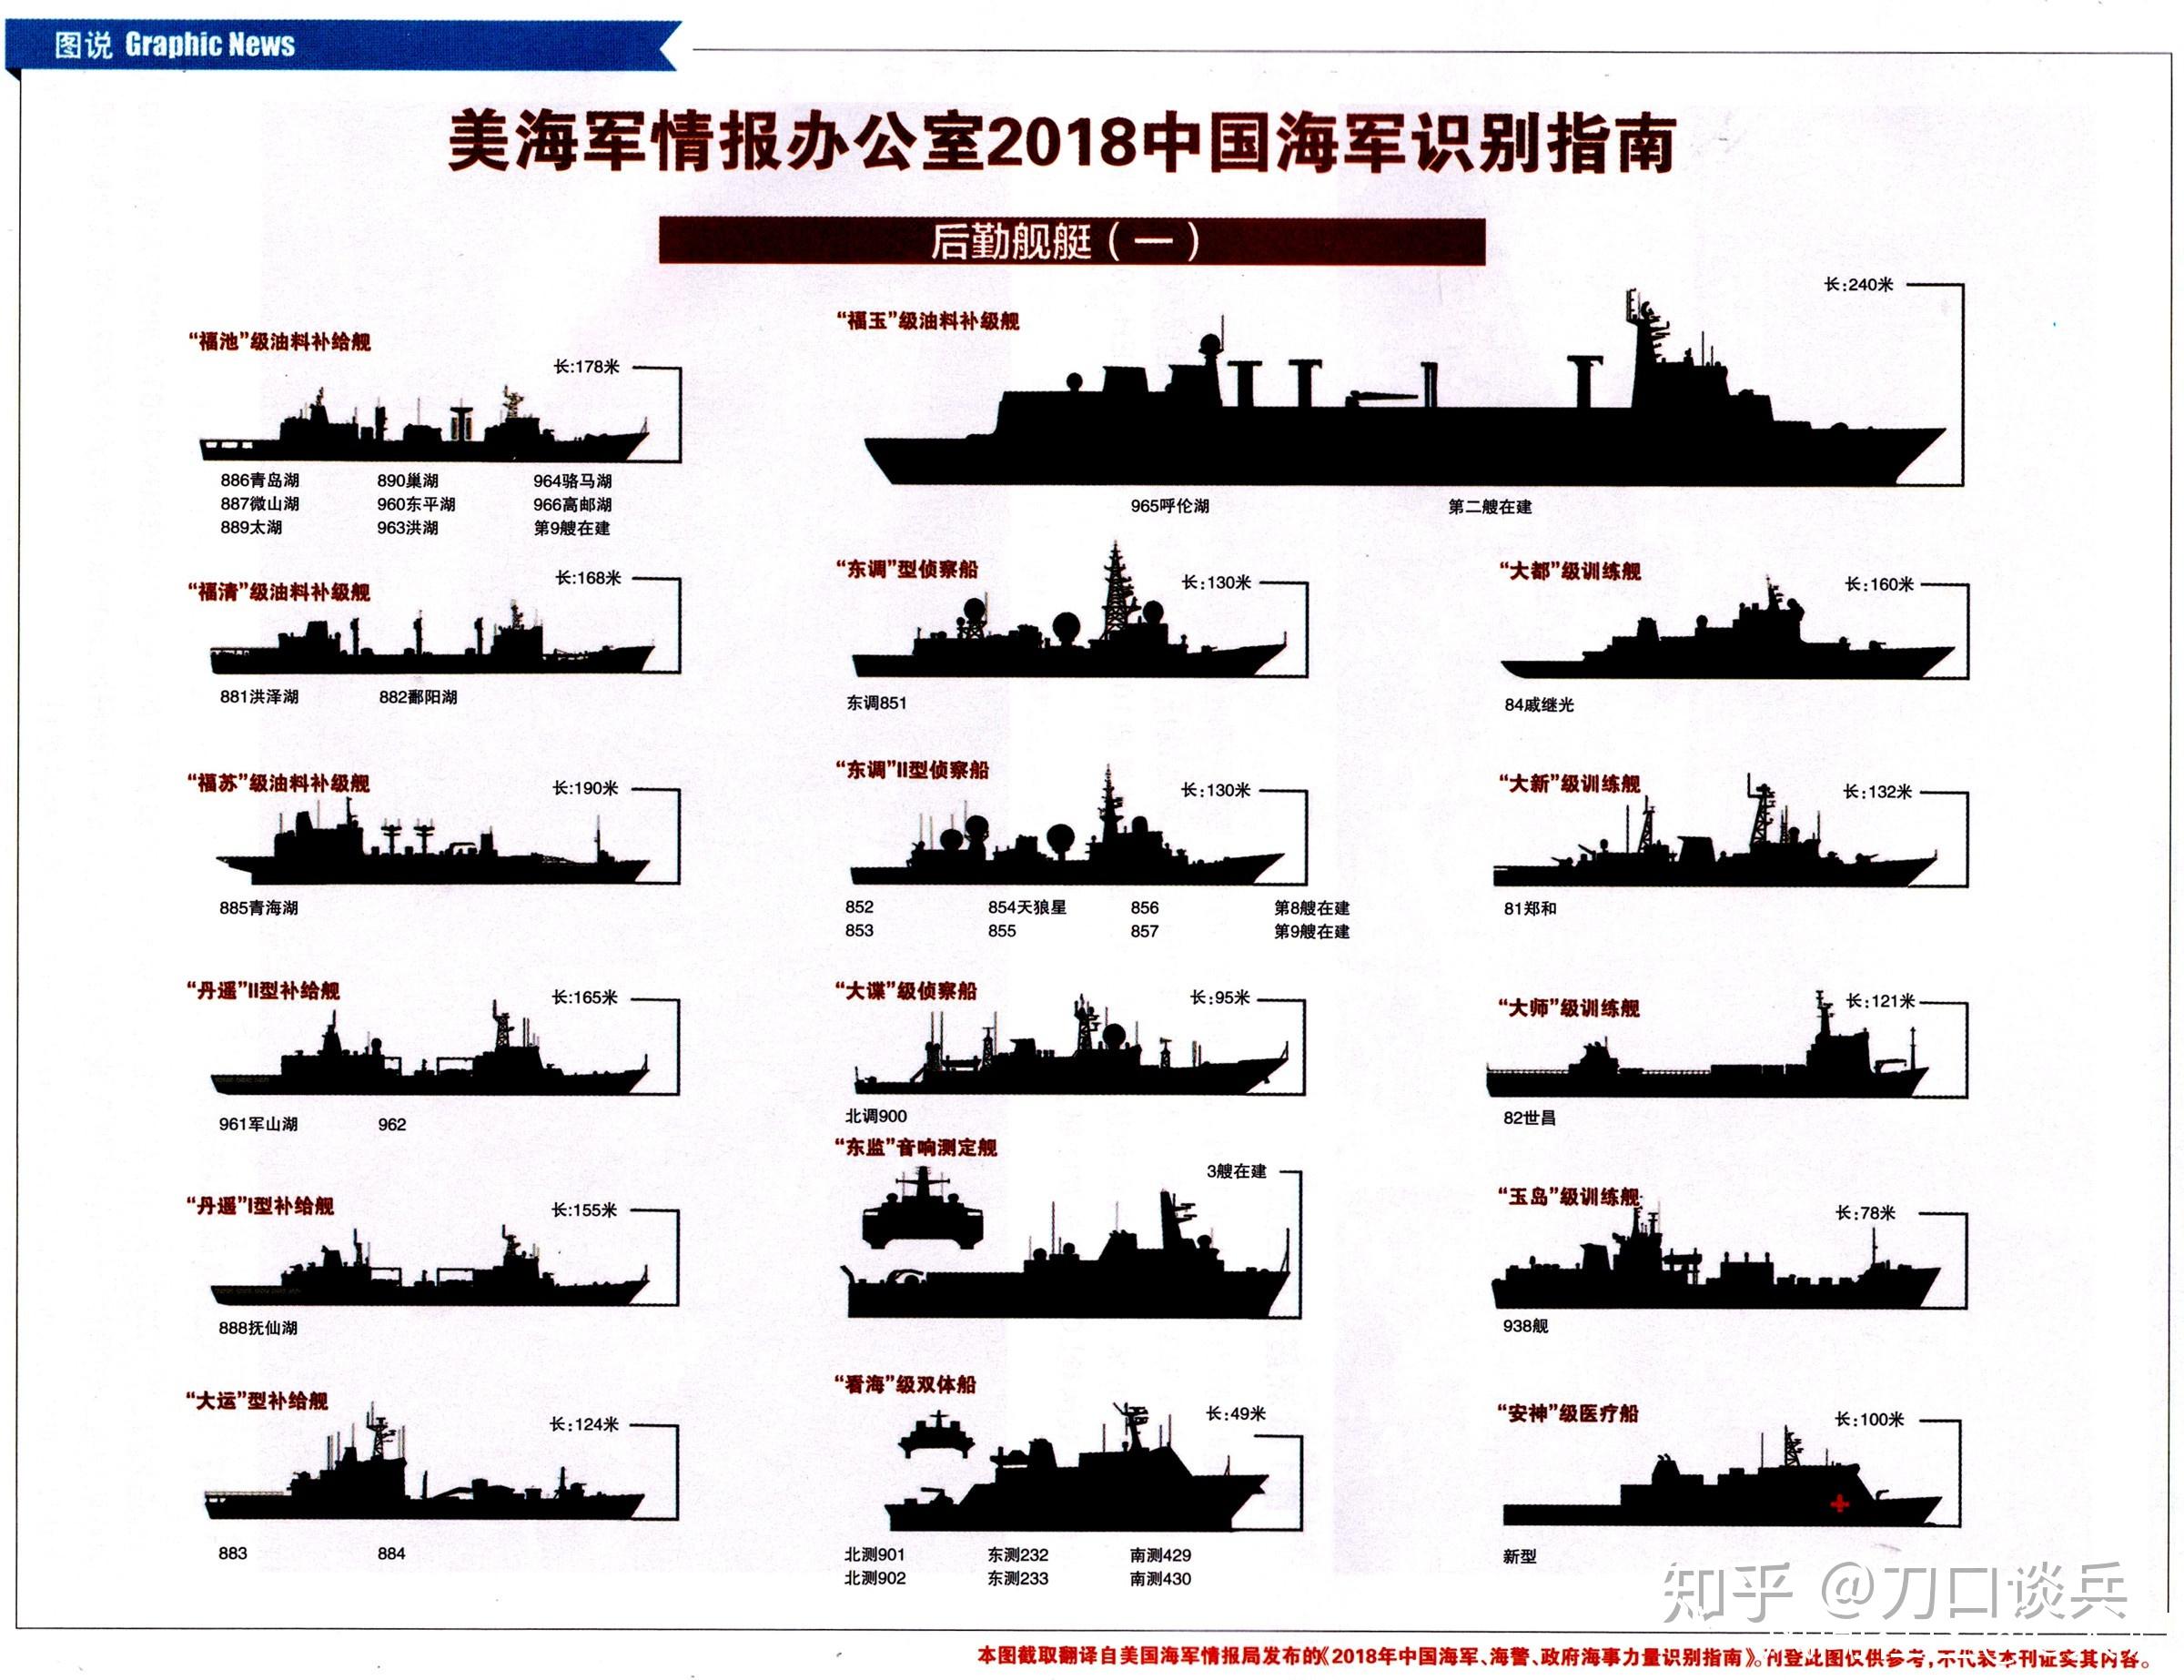 从36艘到163艘,中国海军这10年,主力战舰数量增长近5倍